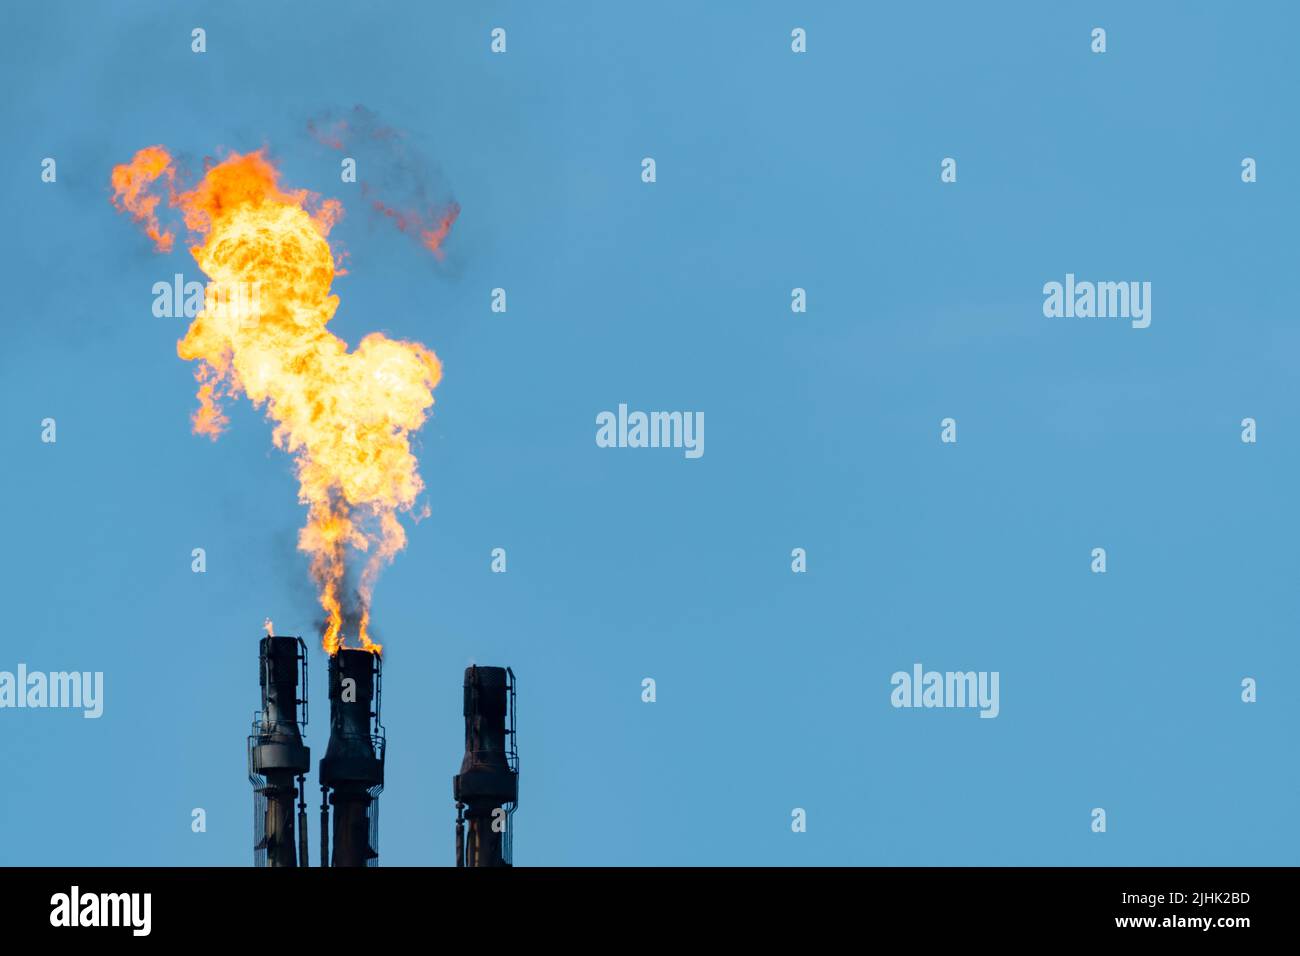 Llamarada de gas de refinería de petróleo, pila de llamaradas quemando el exceso de gas. Copiar espacio a la derecha. Llama de refinería de petróleo, llamarada, quema, chimenea, contaminación, pila de humo. REINO UNIDO Foto de stock